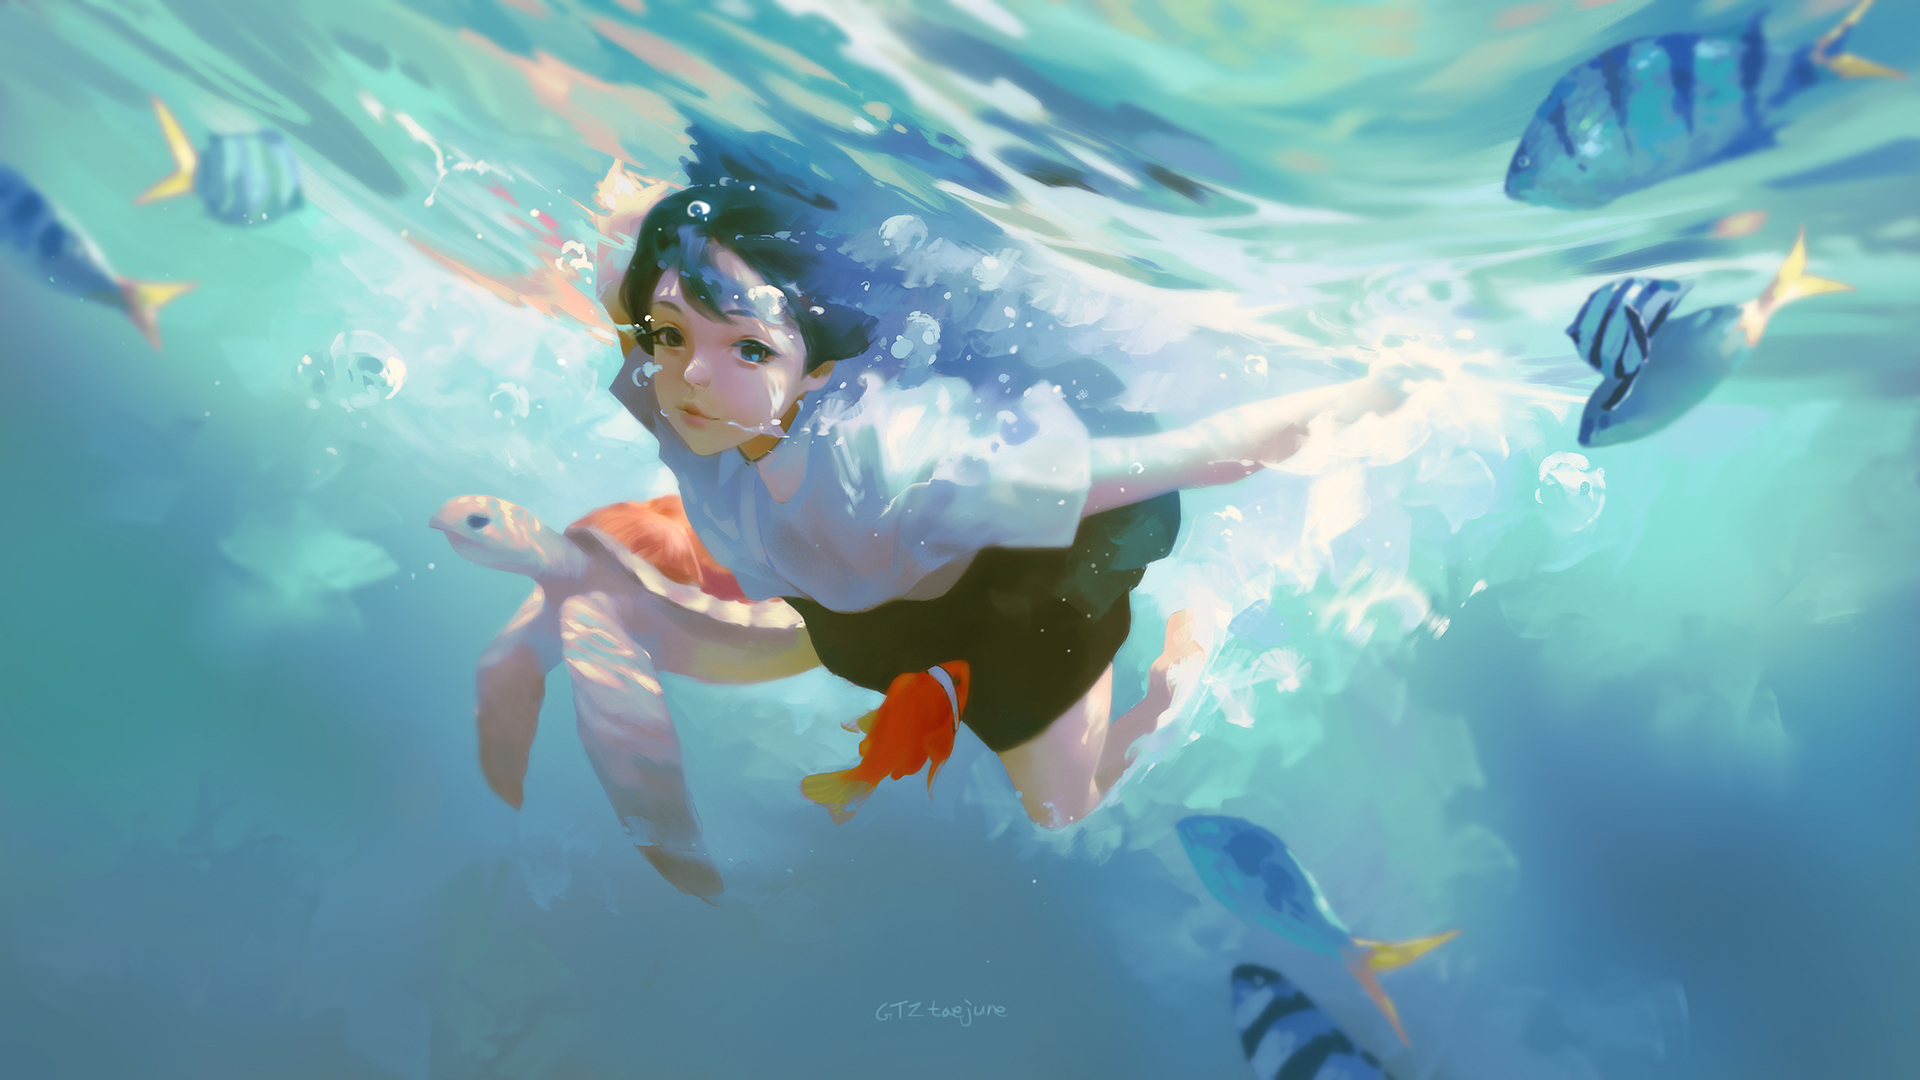 Anime Girls Artwork Taejune Kim Underwater 1920x1080